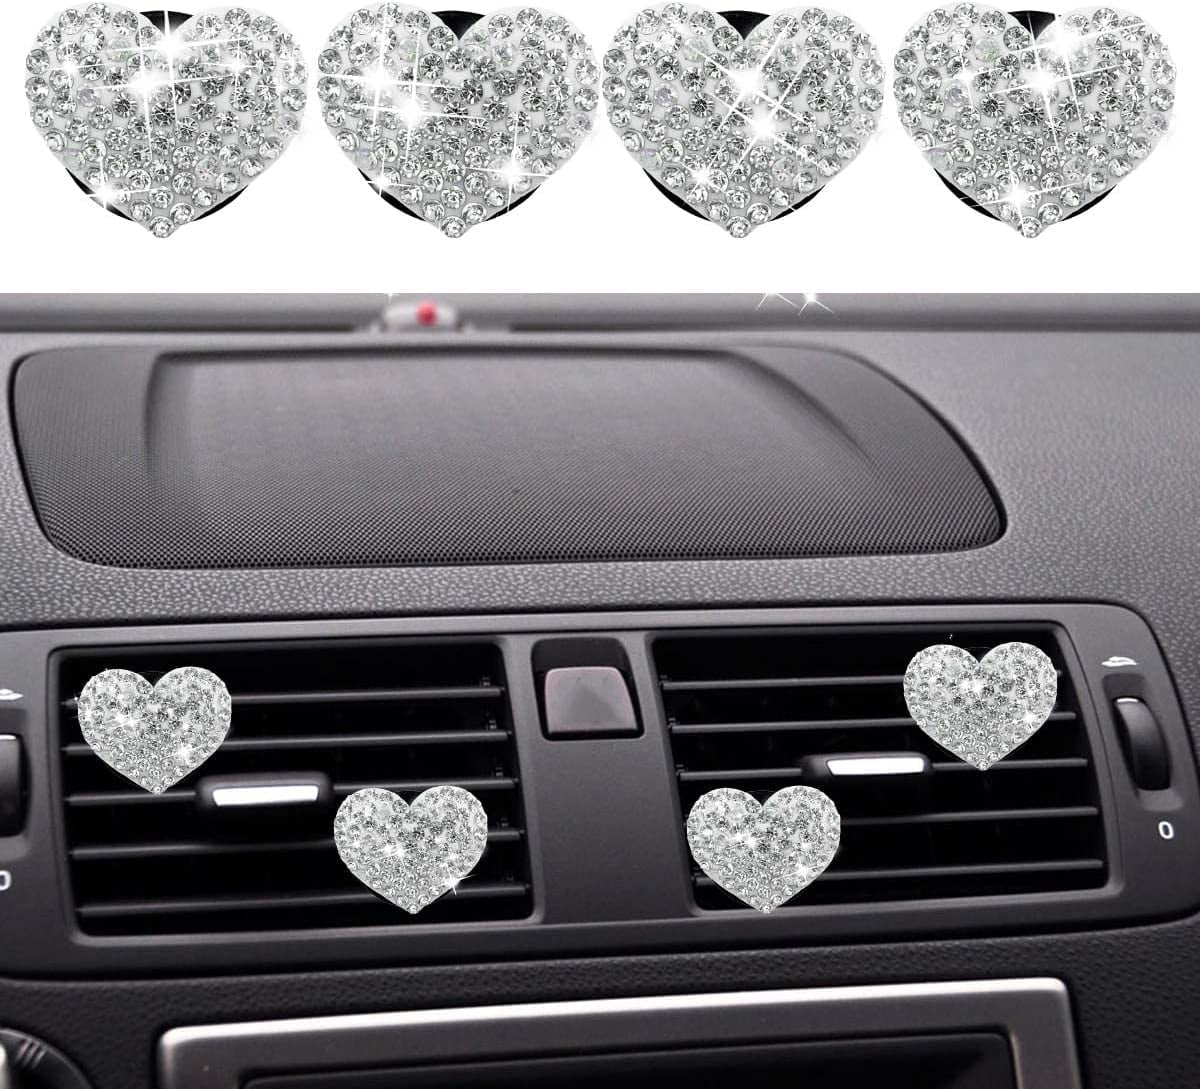 zadin Bling Car Accessories For Women, Teens, Heart Car Air Fresheners,  Cute Diamond Car Accessories Interior, Cute Car Decor, Well Ma